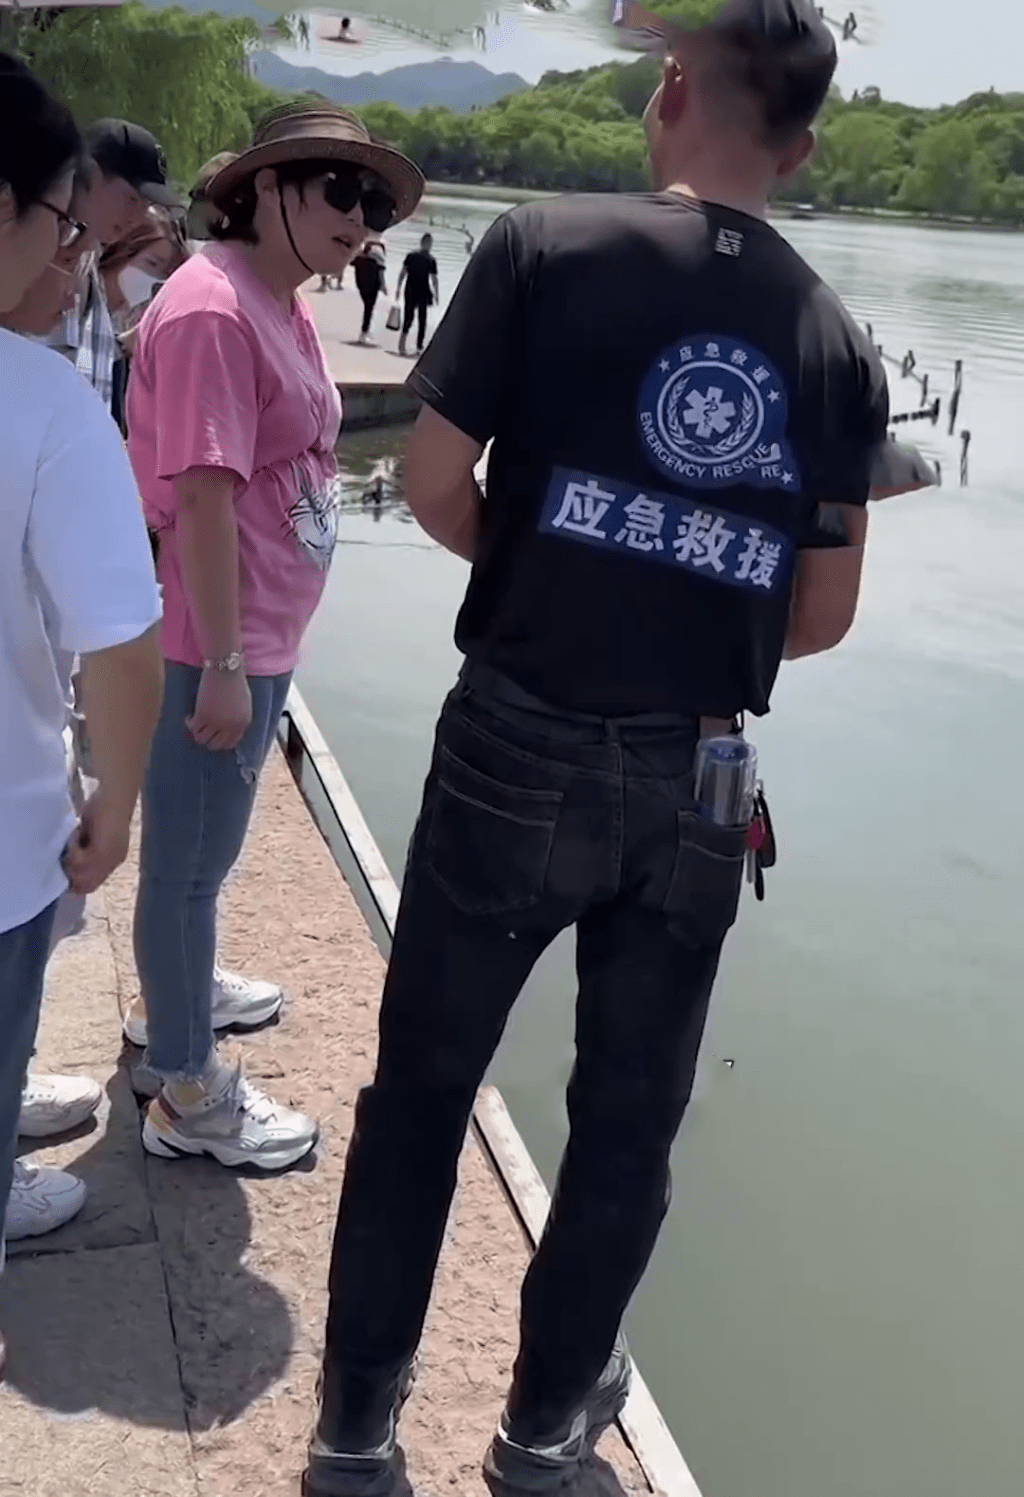 身穿「應急救援」的男子與遊客在商議打撈手機的費用。